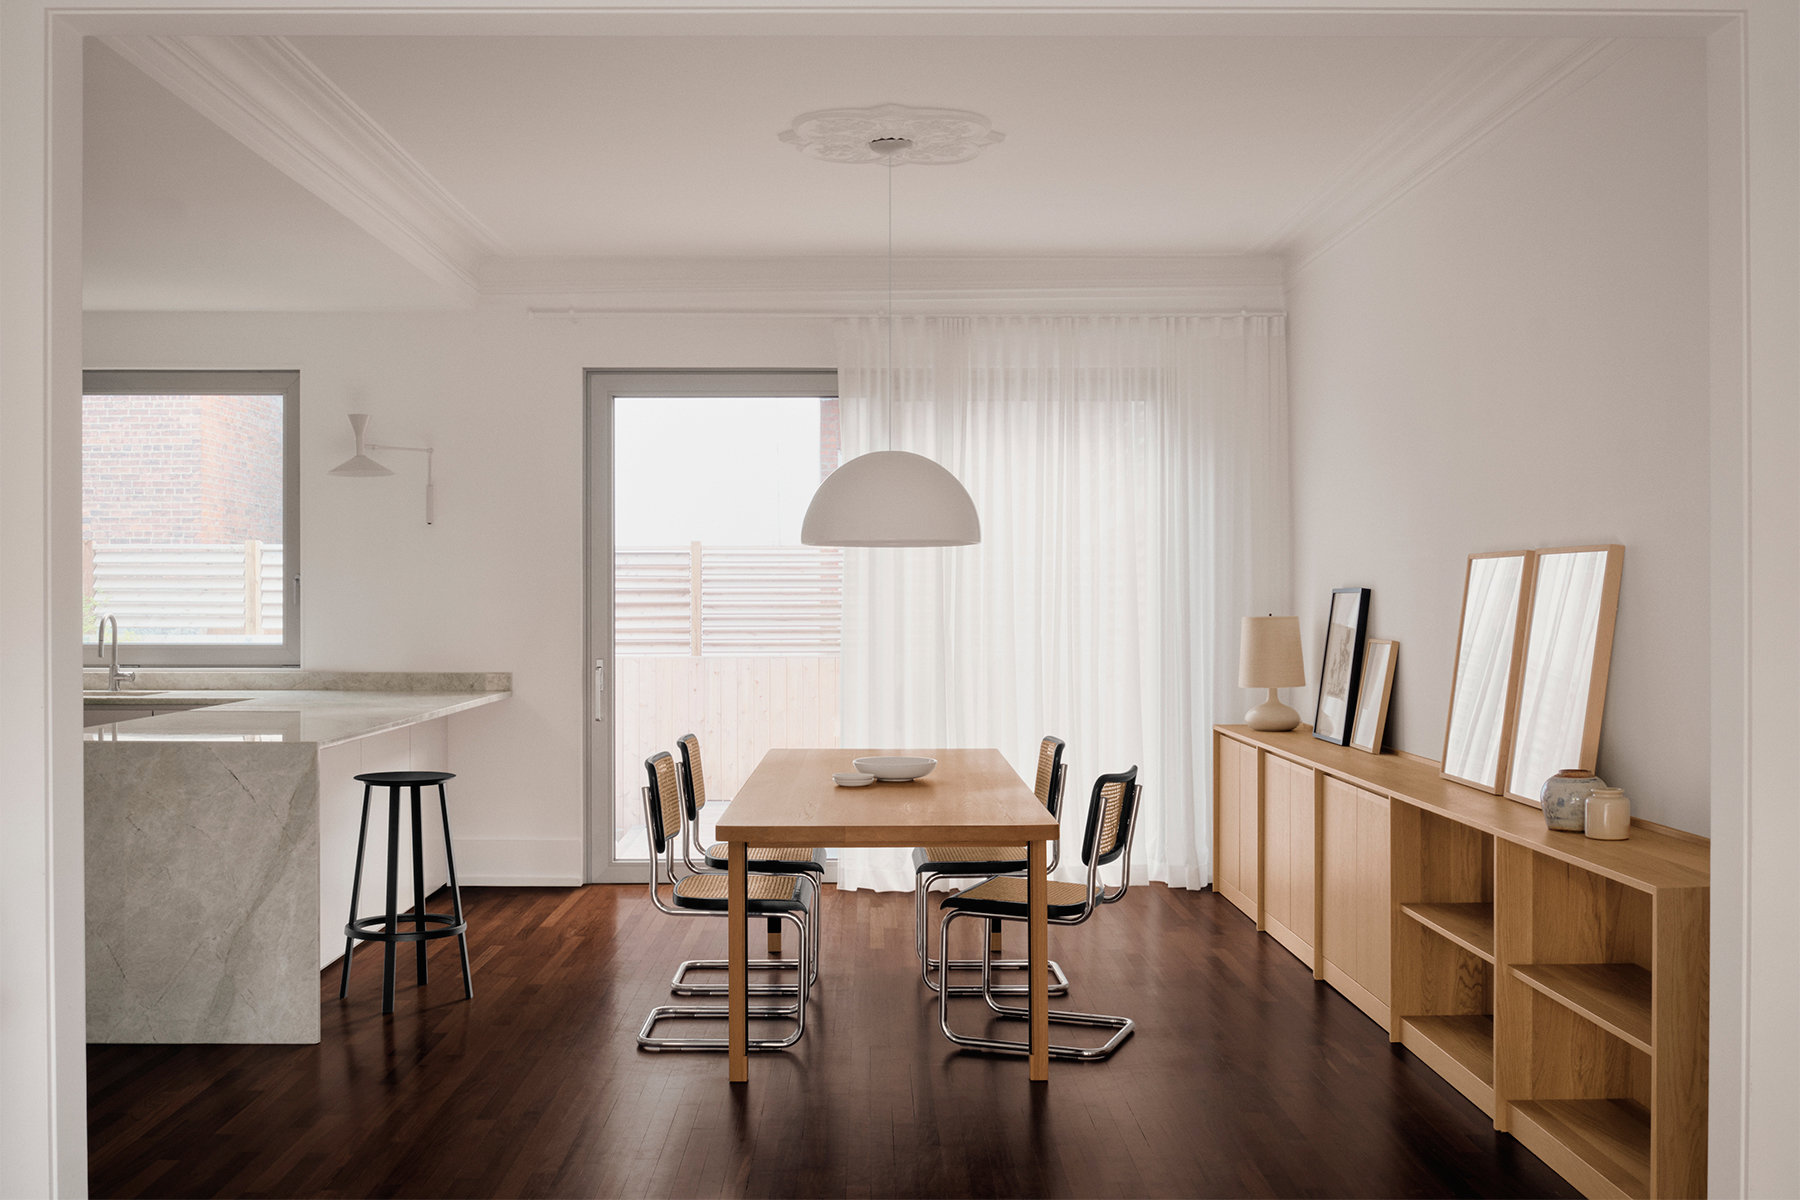 Color blanc y madera, la combina perfecta en una casa que practica el minimalismo cálido